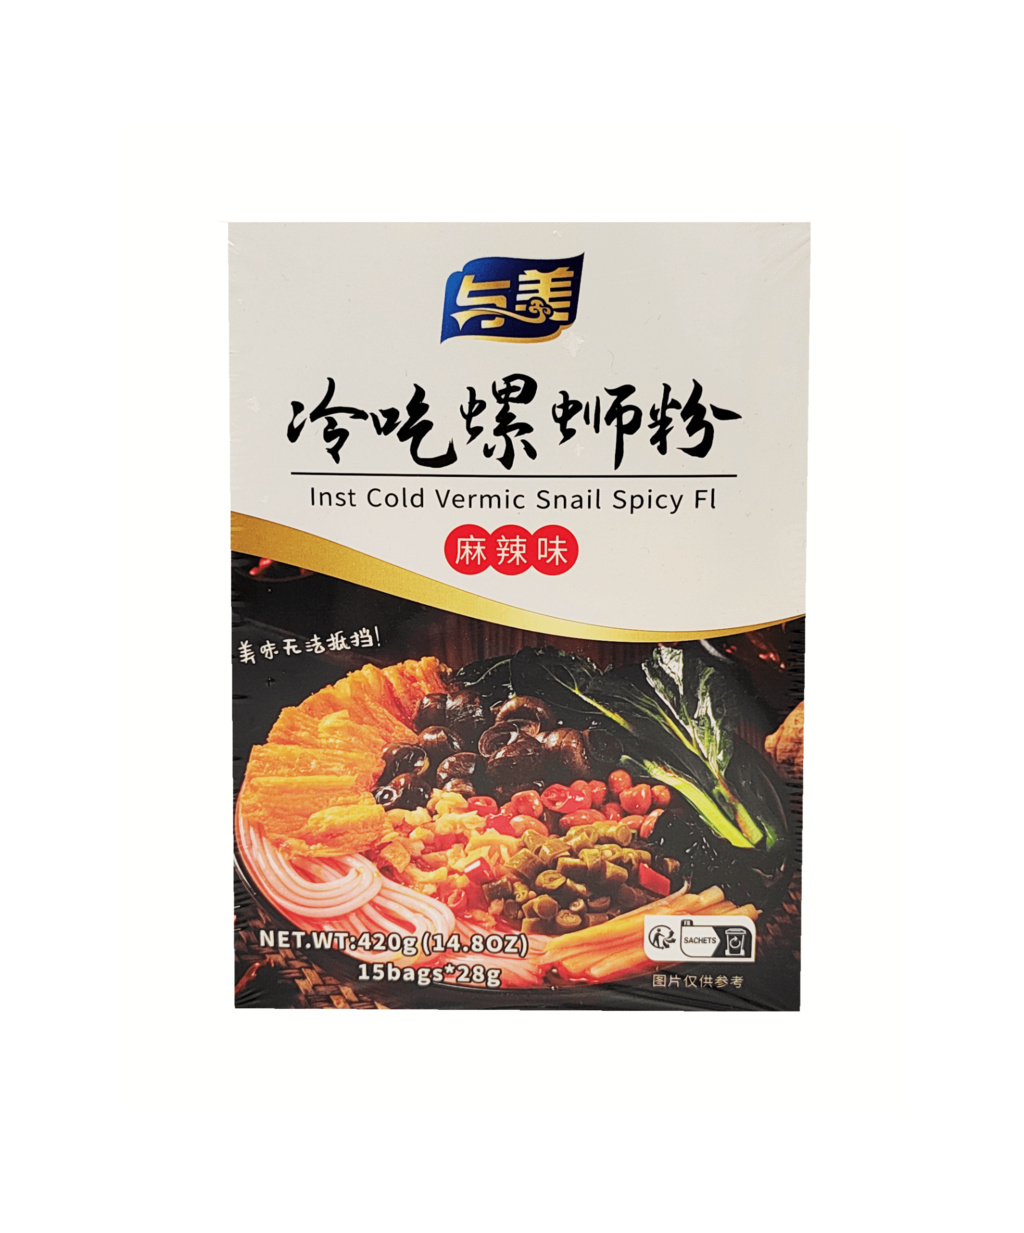 螺蛳粉 麻辣味 15袋x28g/420g 与美中国